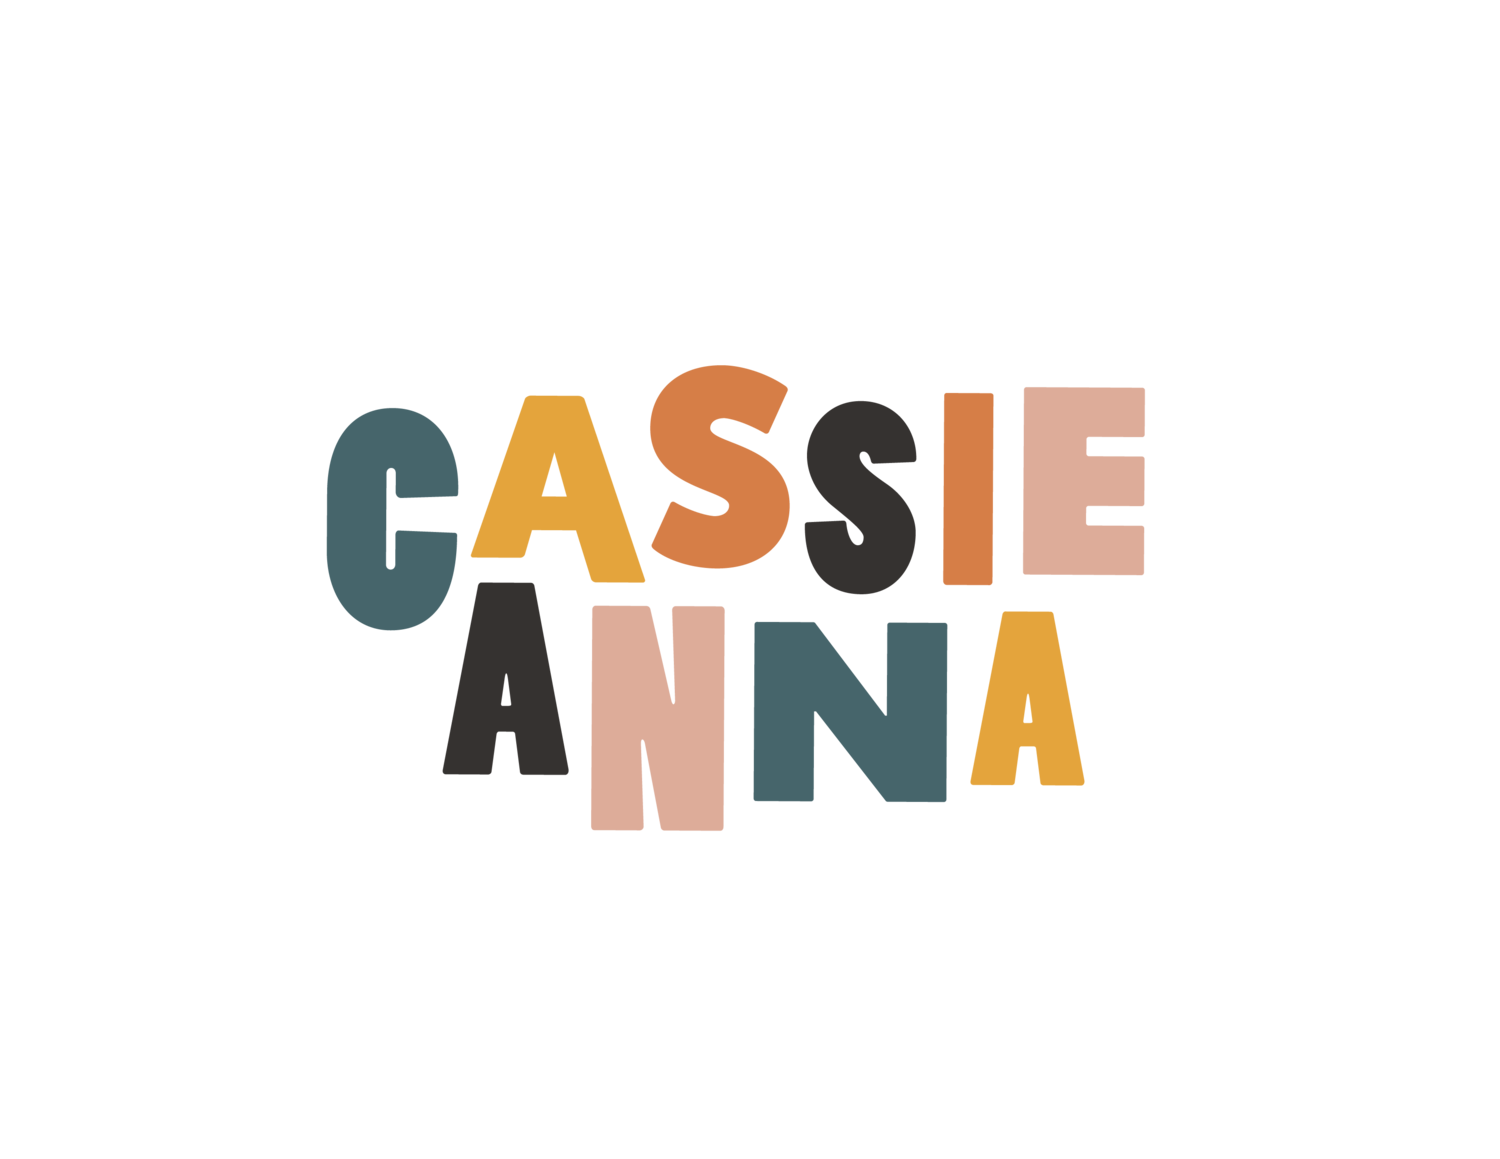 Cassie Anna